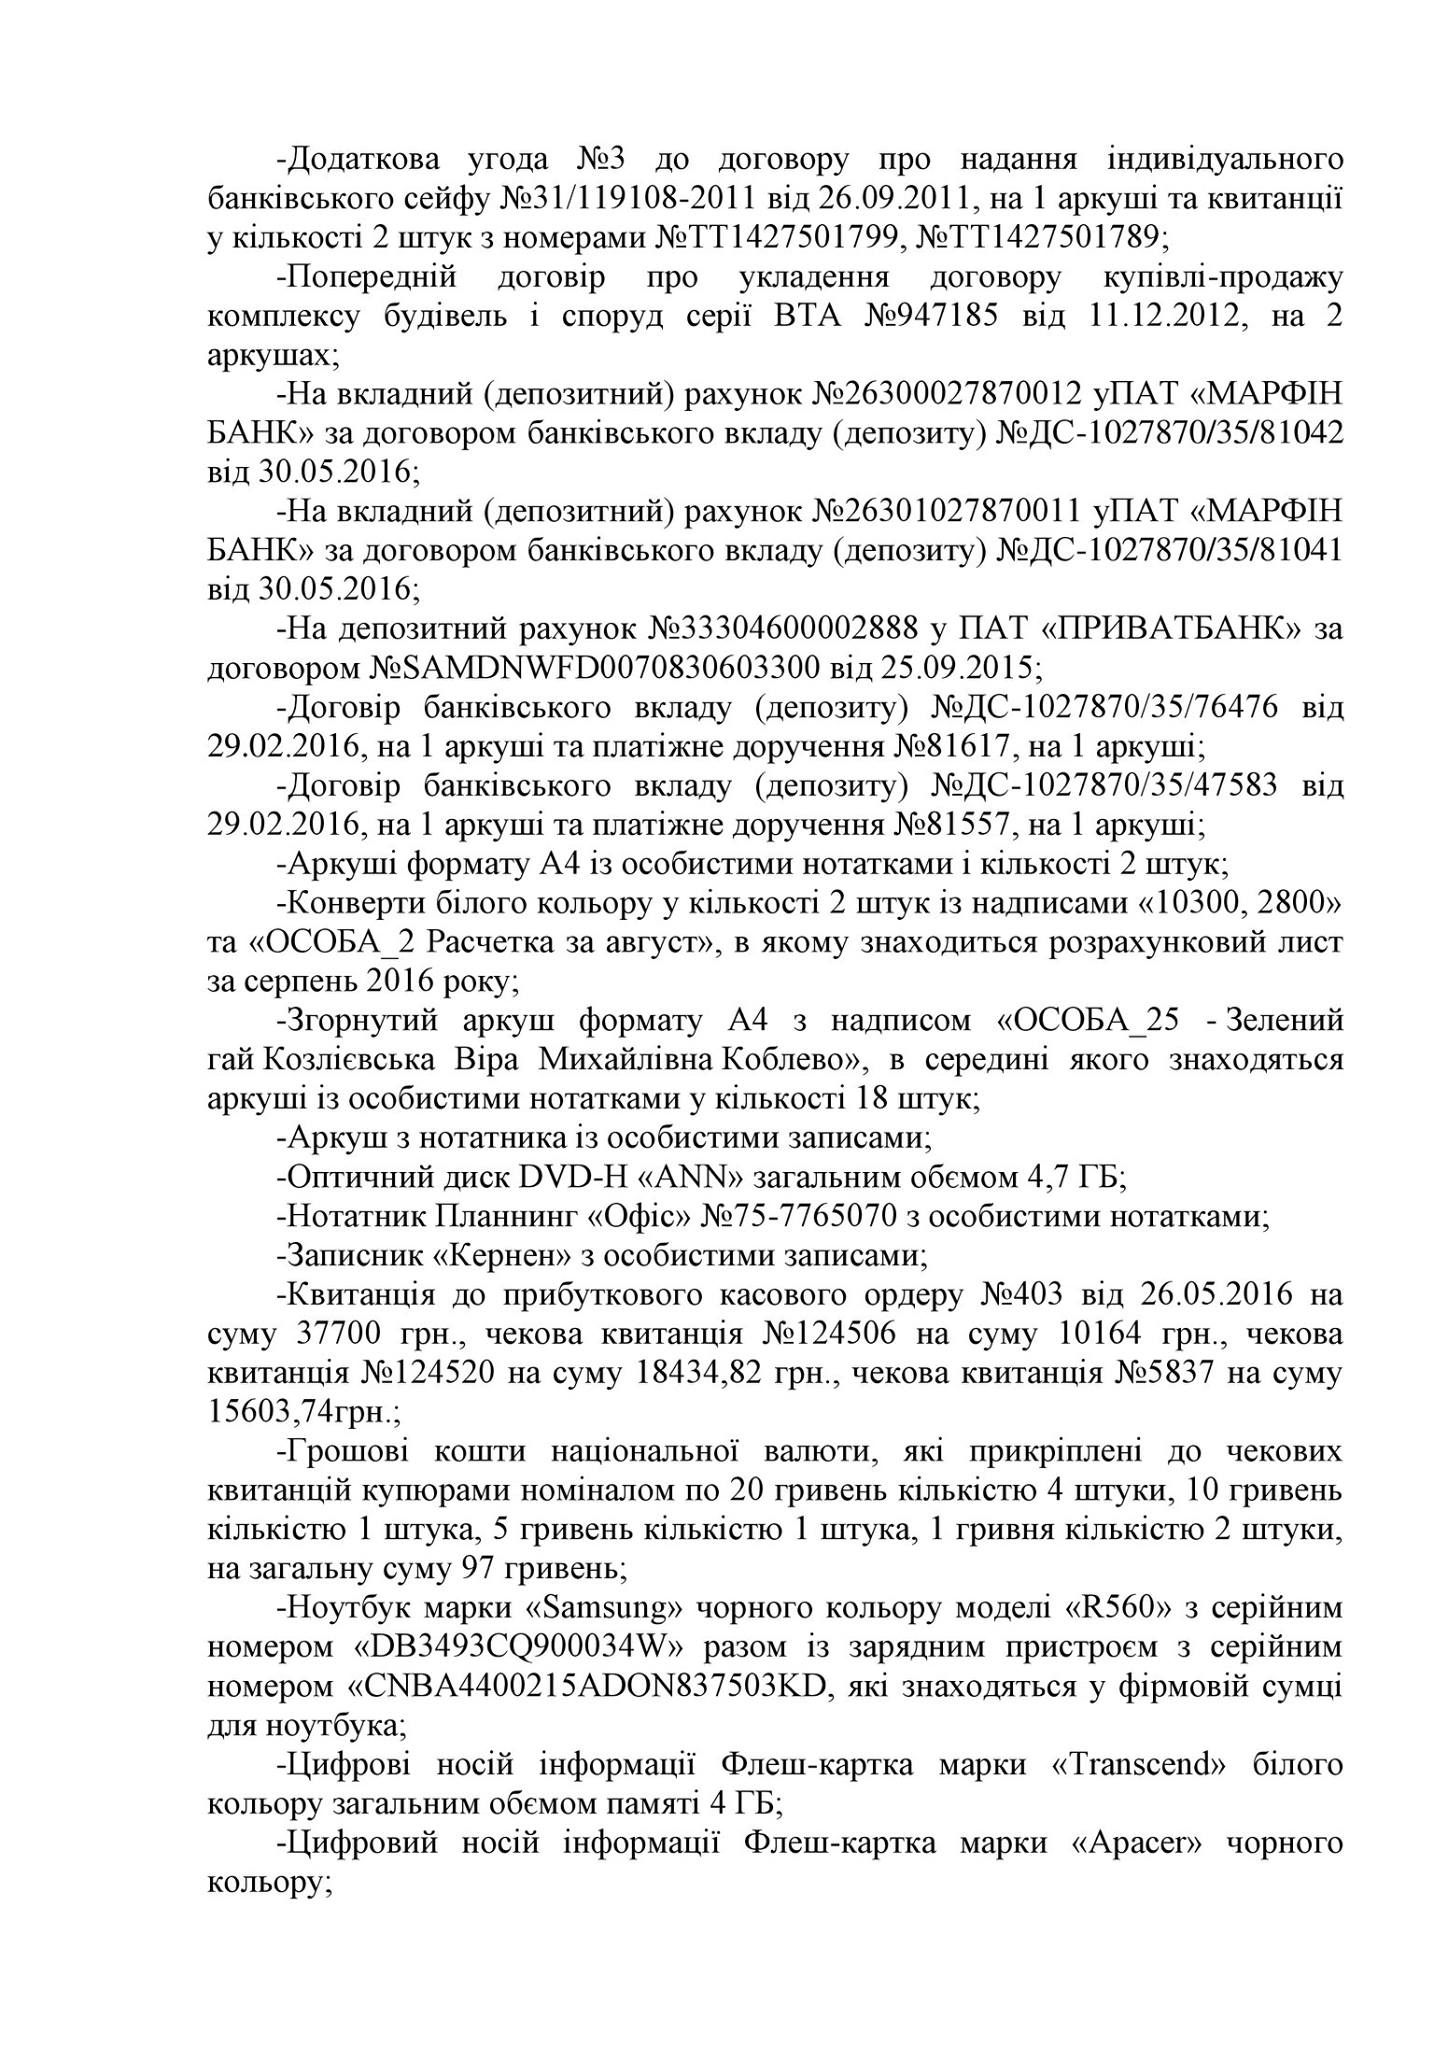 Повний список скарбів миколаївського "Аладдіна", вилучених військовою прокуратурою - фото 1